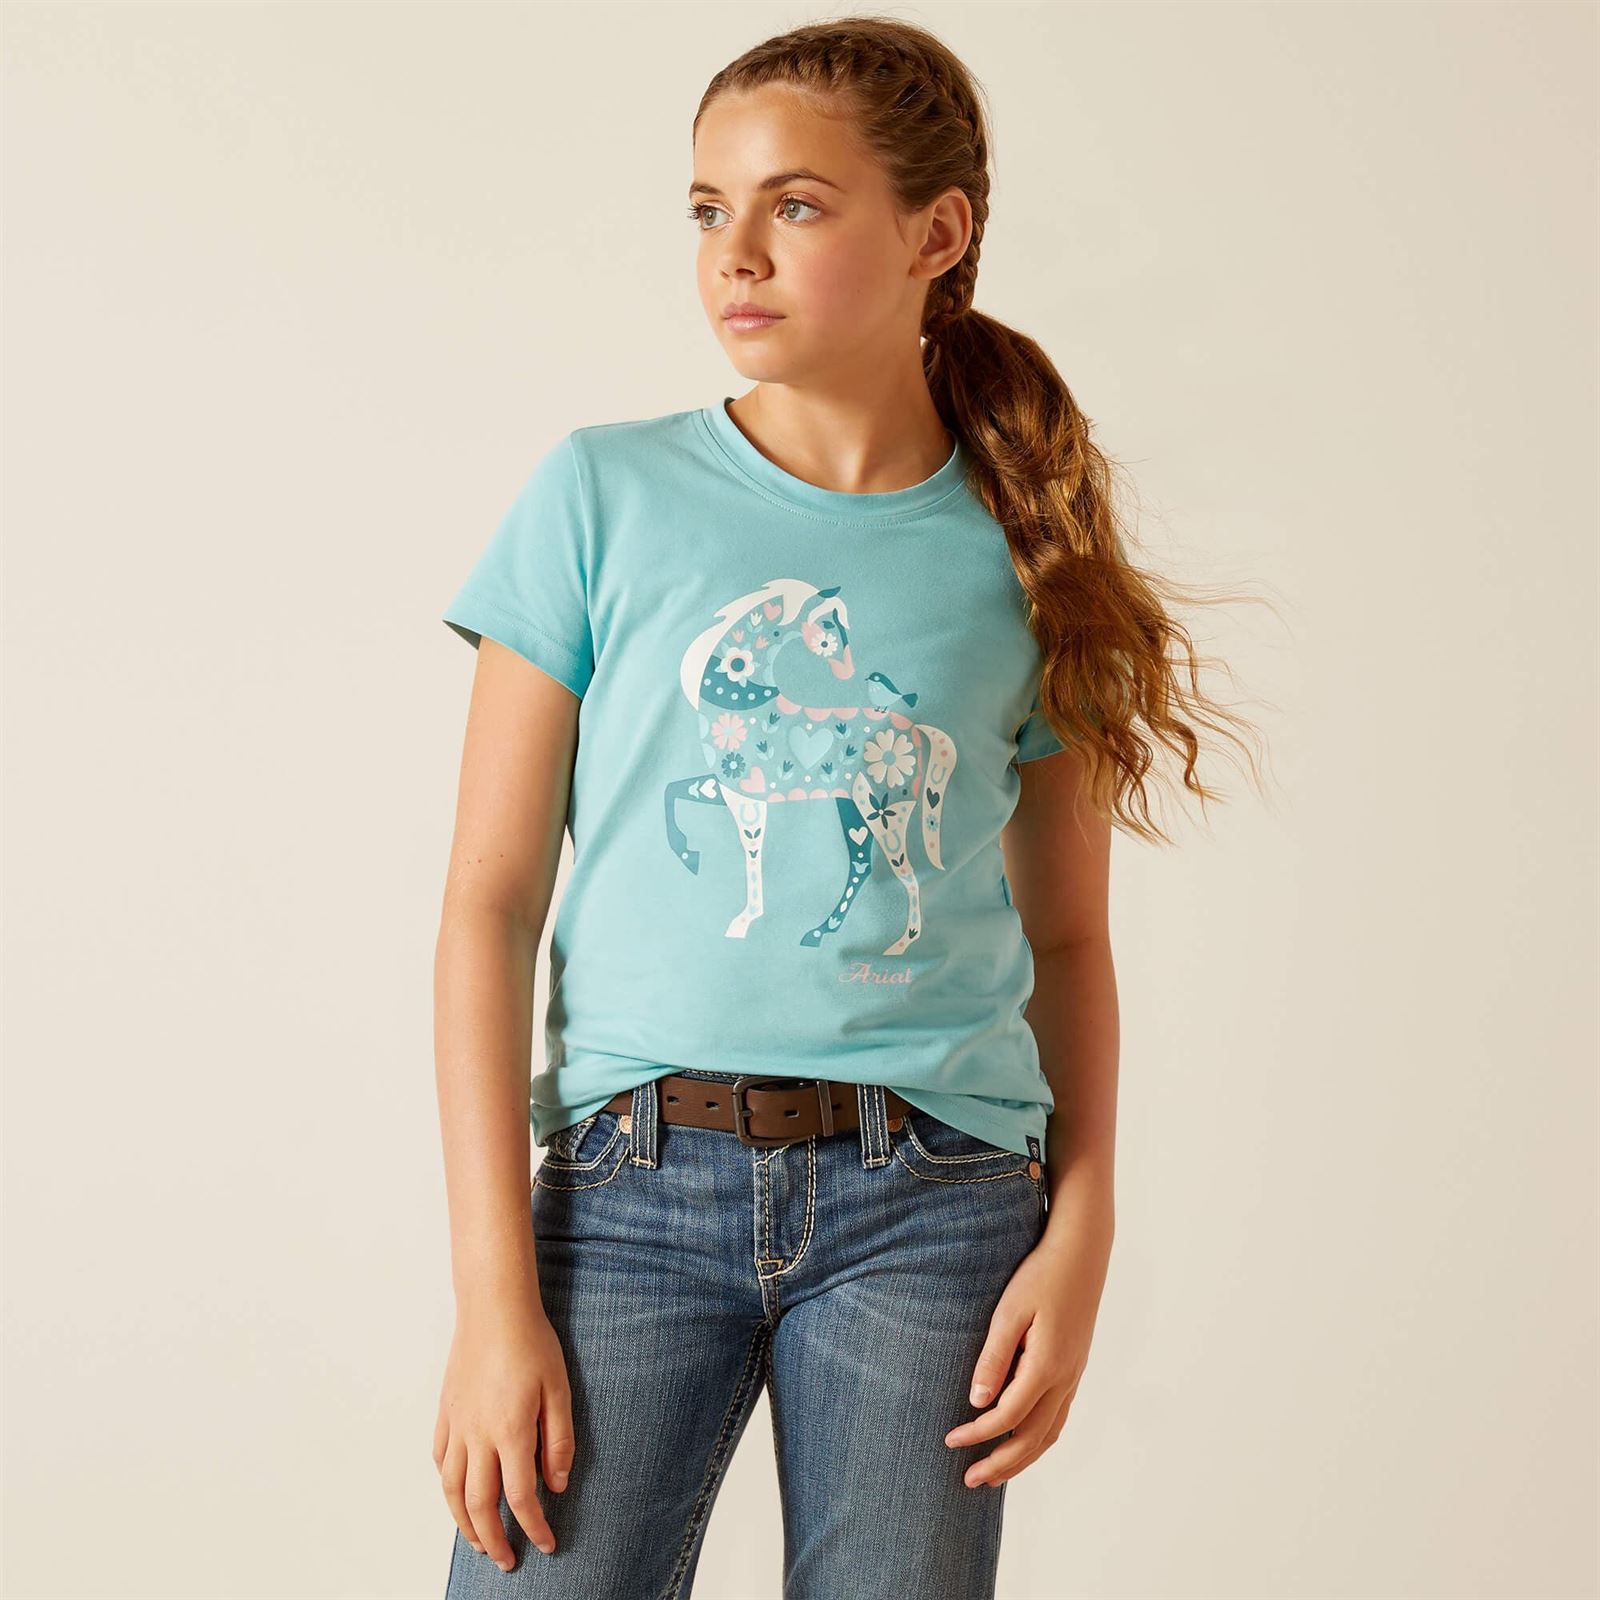 Camiseta Ariat niña Little Friend color azul turquesa caballo flores - Imagen 1